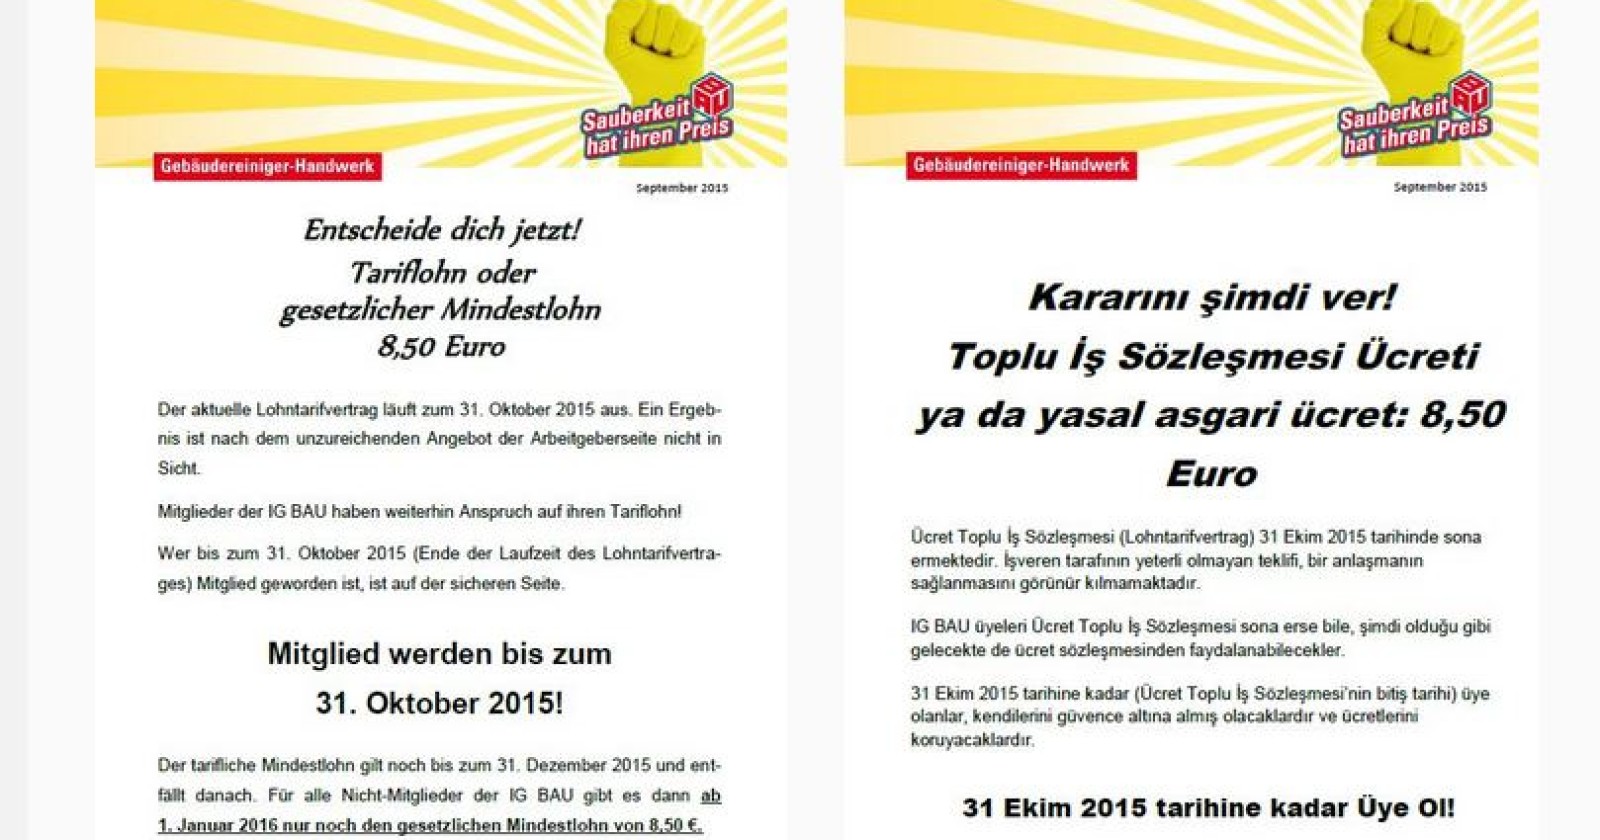 Weniger Lohn für Nicht-Mitglieder ab November? Flugblatt auf deutsch & türkisch